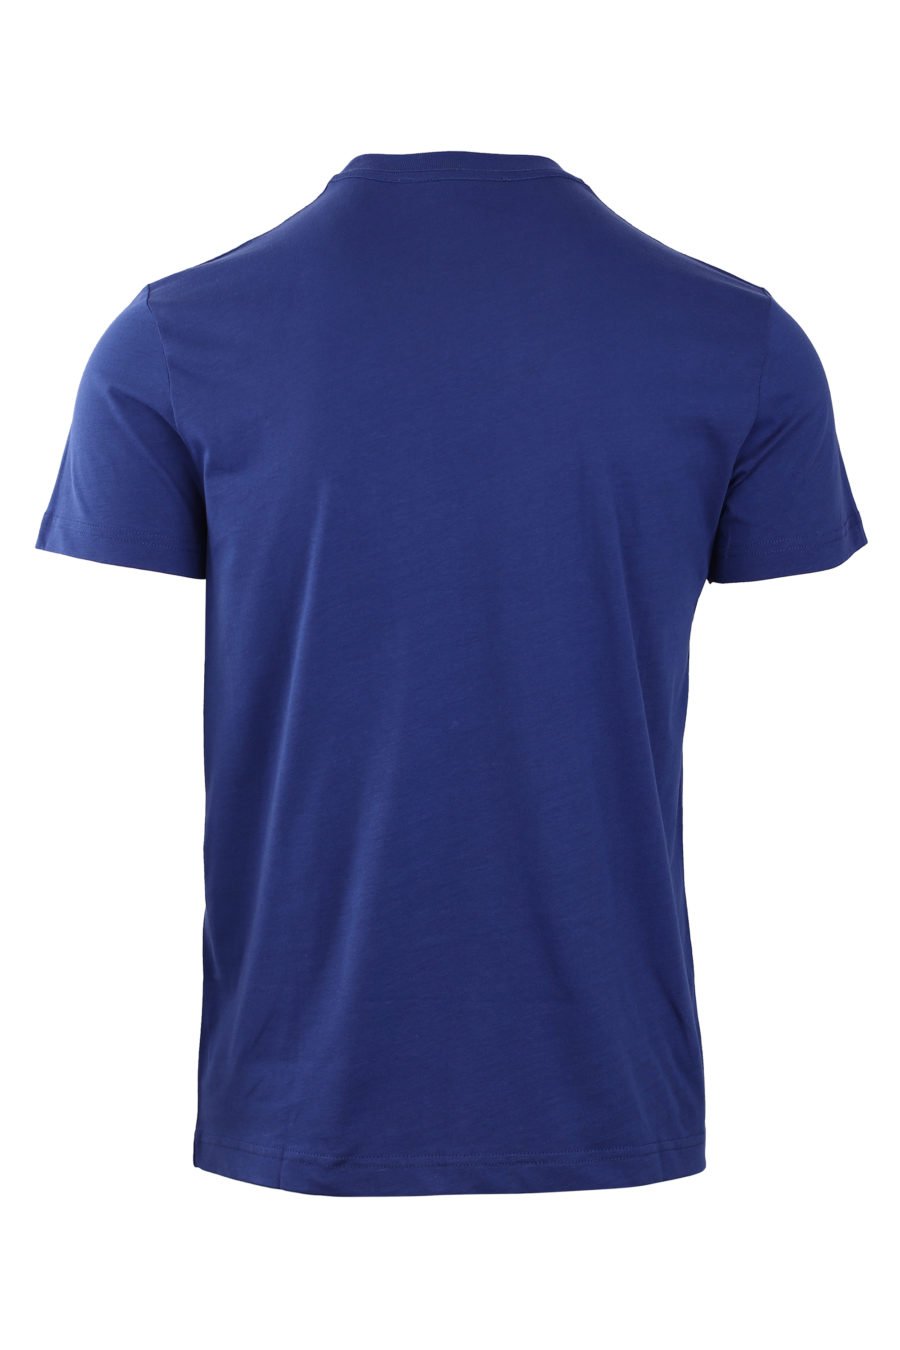 Camiseta azul marino con logo redondo pequeño - IMG 0773